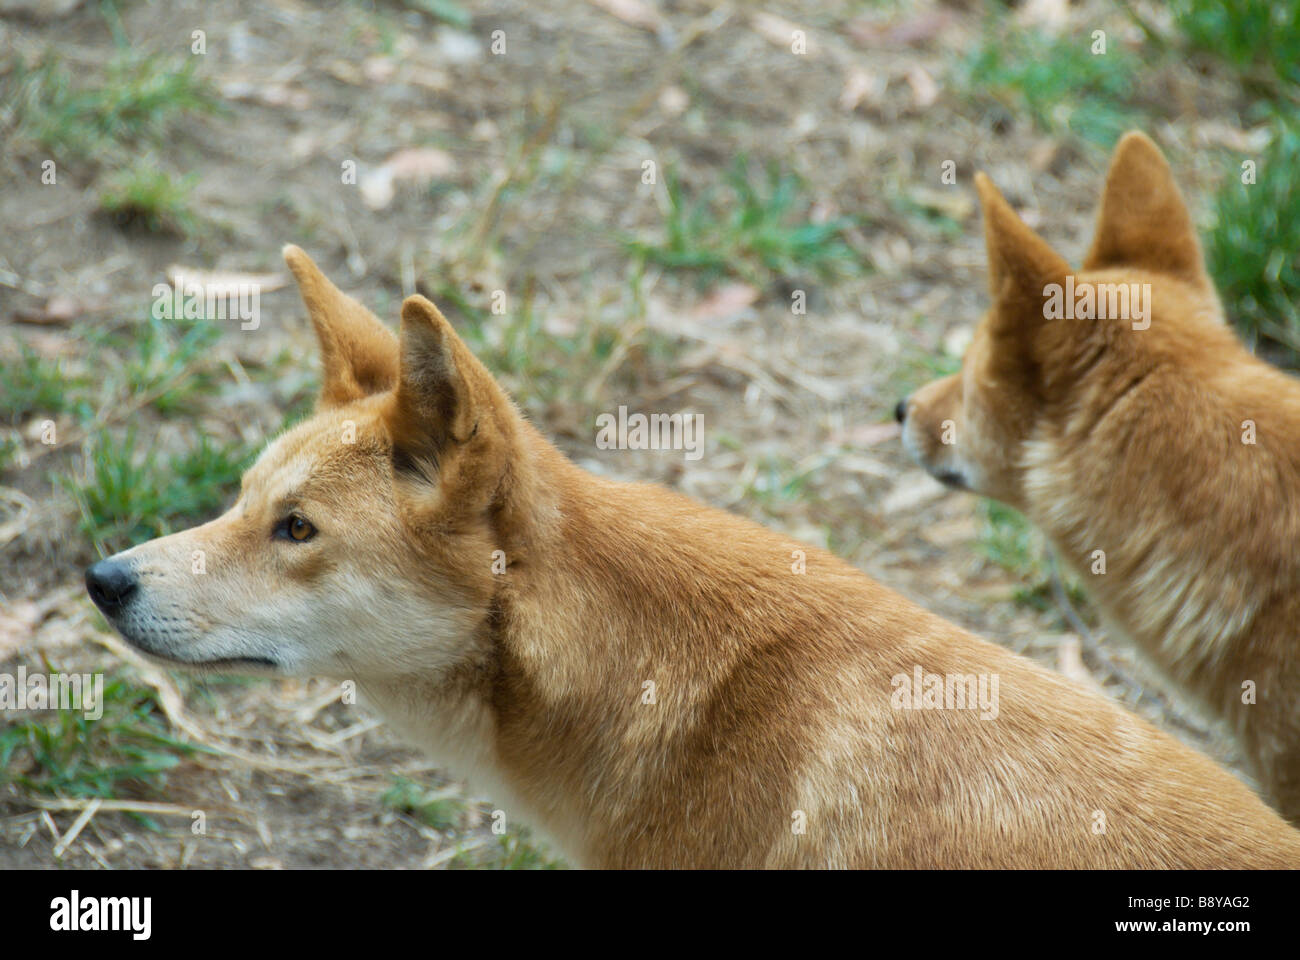 Two Australian dingoes await feeding time at Cleland Wildlife Park Adelaide South Australia Stock Photo